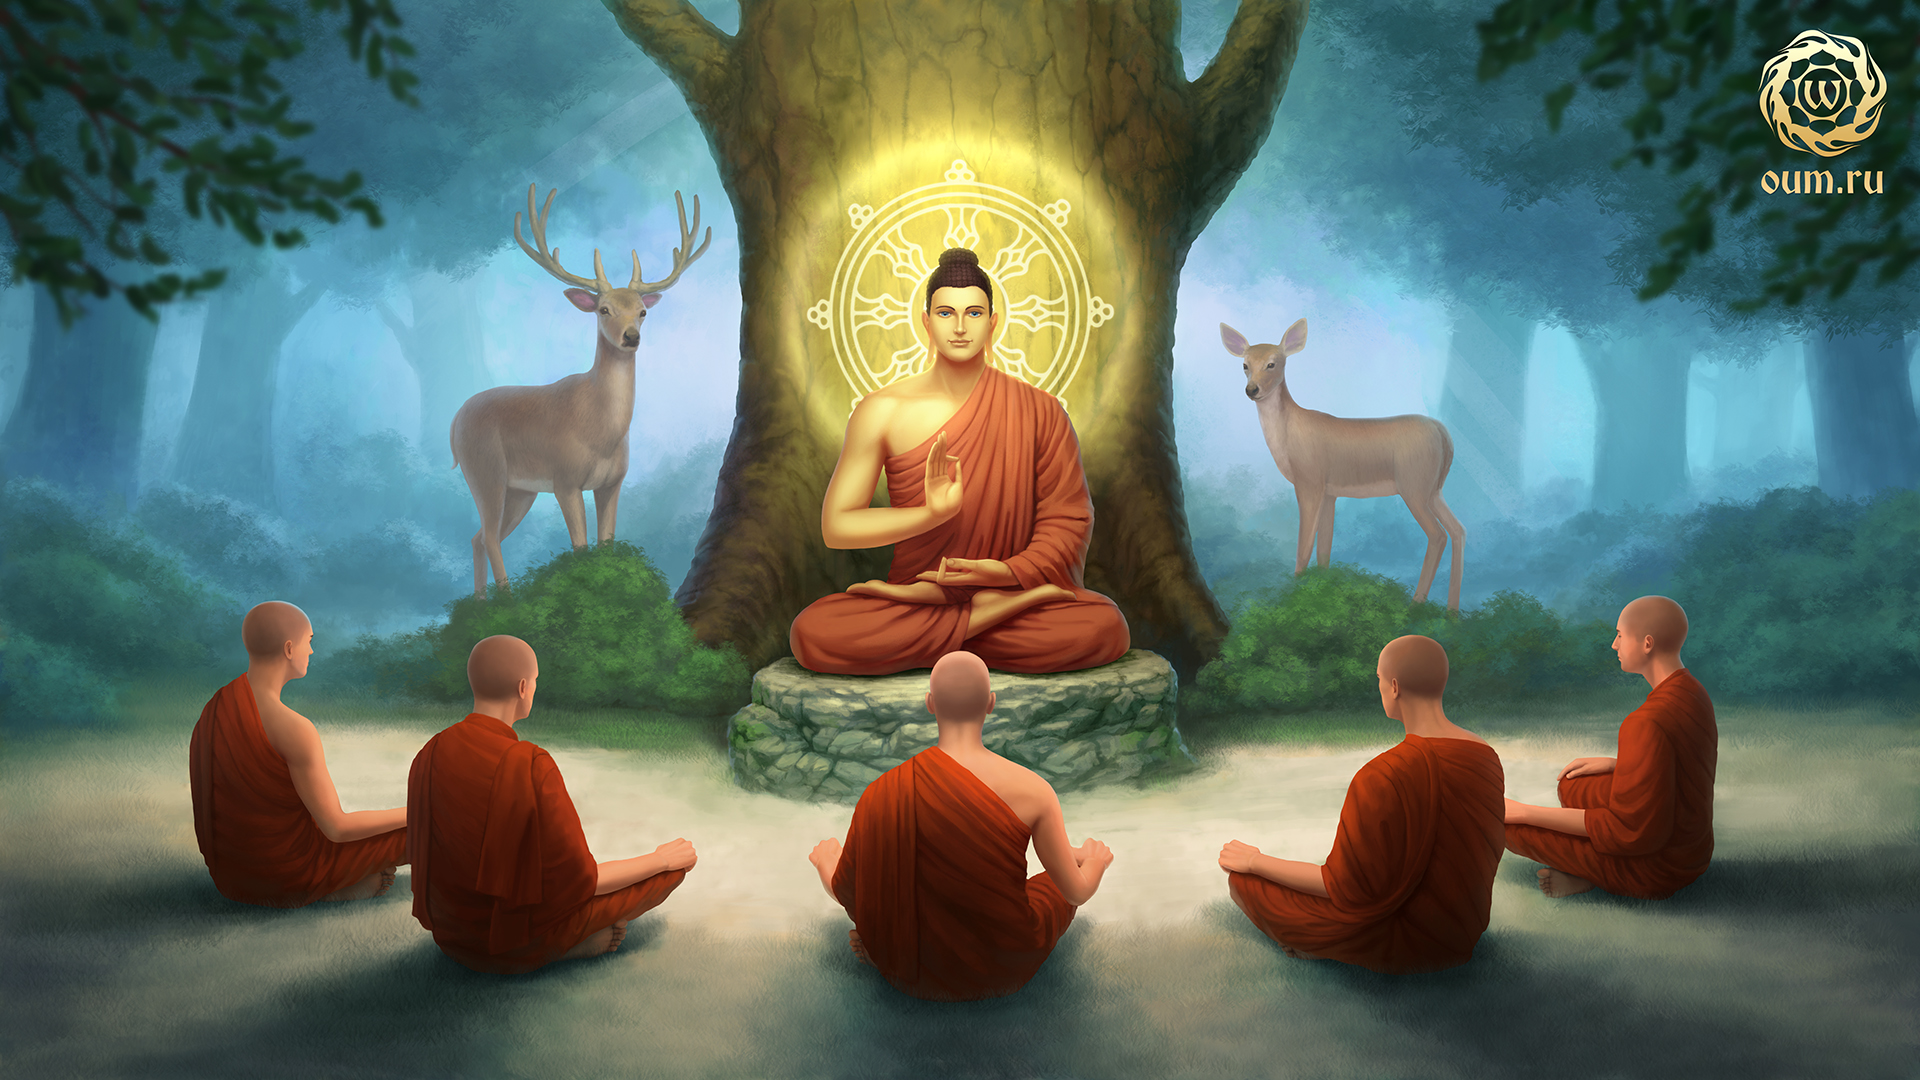 Духовная индия. Будда Гаутама и Будда Шакьямуни. Учение Будды Шакьямуни. Сиддхартха Гаутама под деревом. Будда Шакьямуни с учениками.